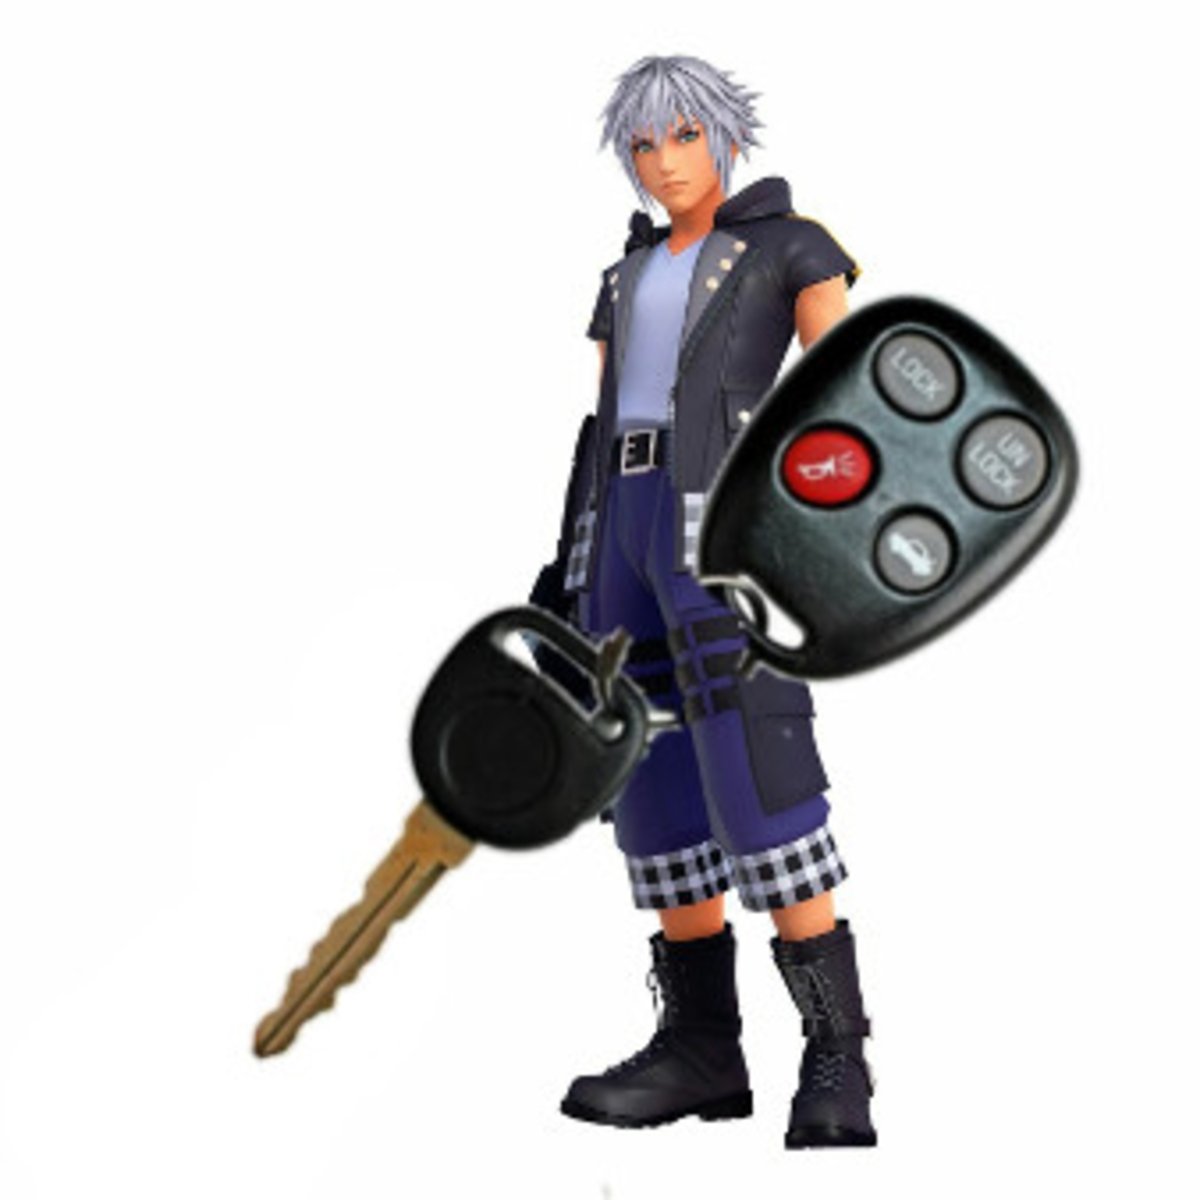 La nueva llave espada de Riku en Kingdom Hearts 3 está provocando multitud de reacciones en la red